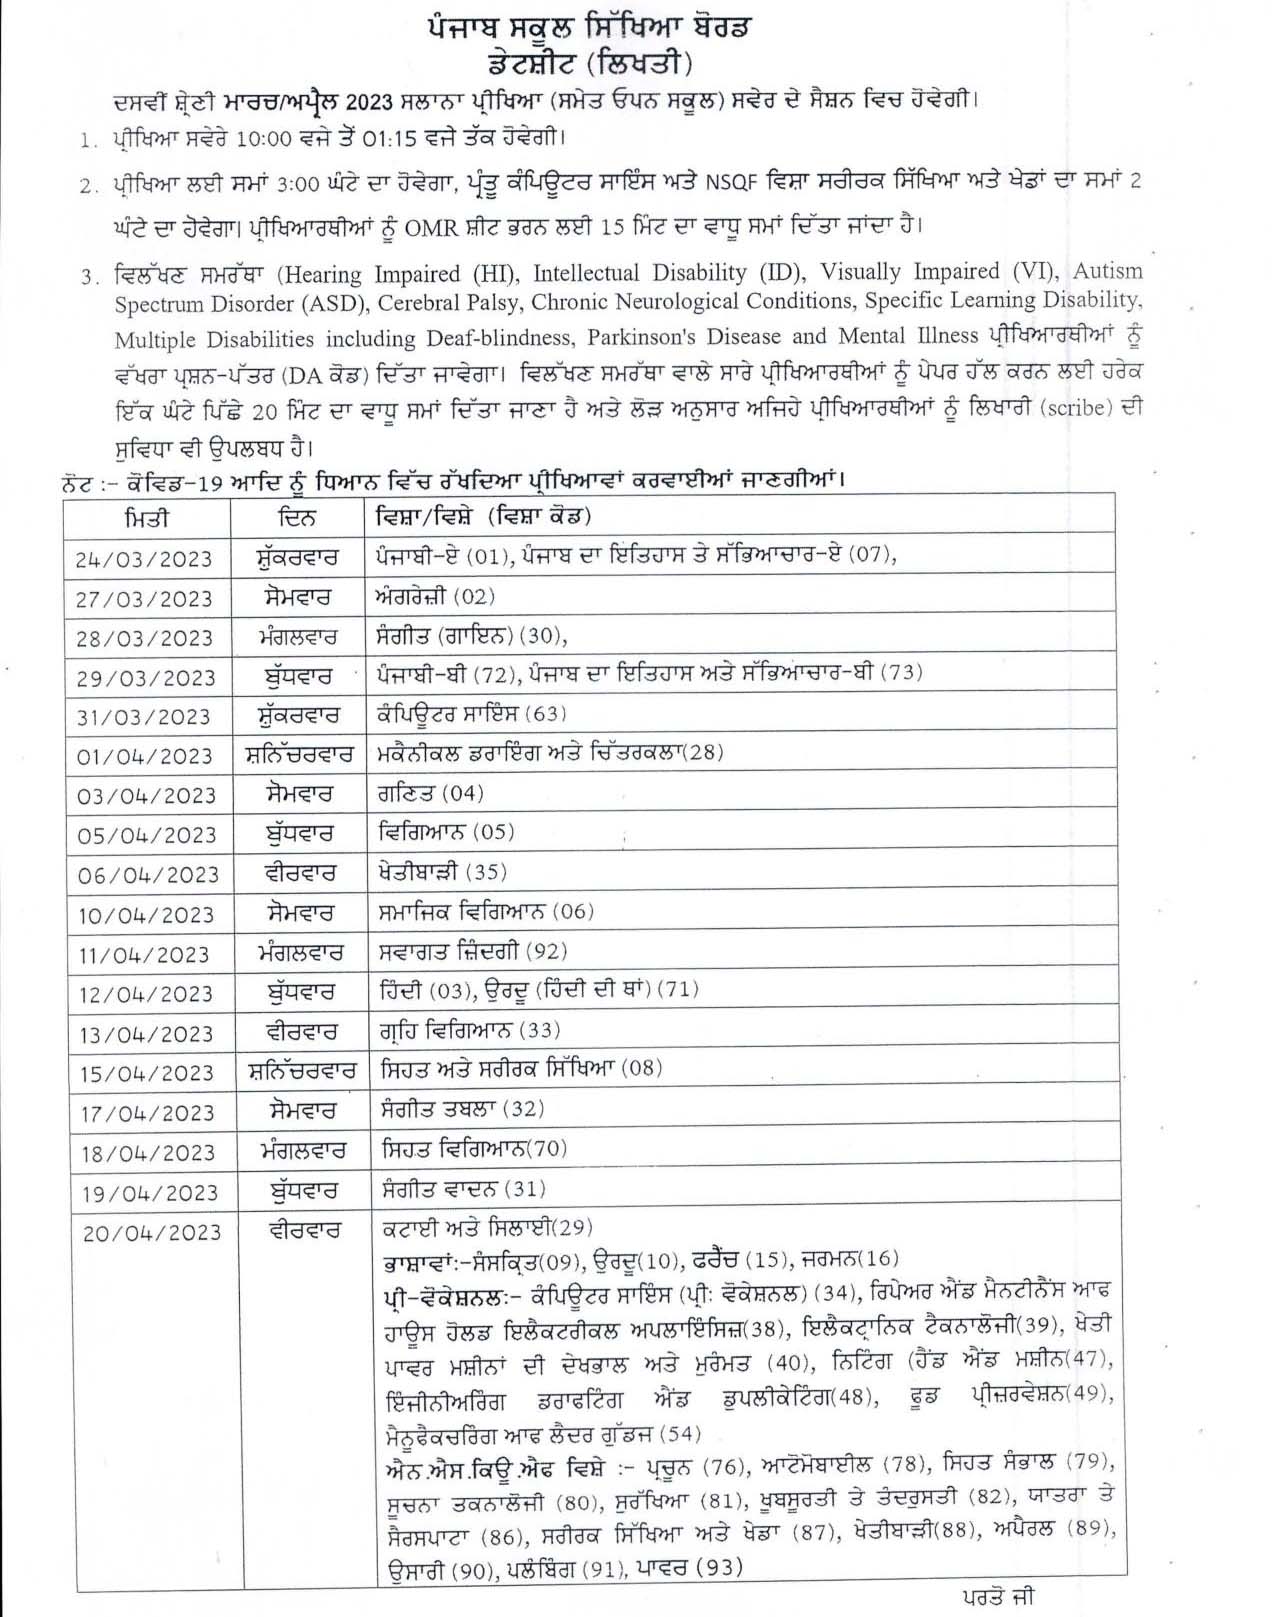 Punjab Board 10th Class Schedule 2023